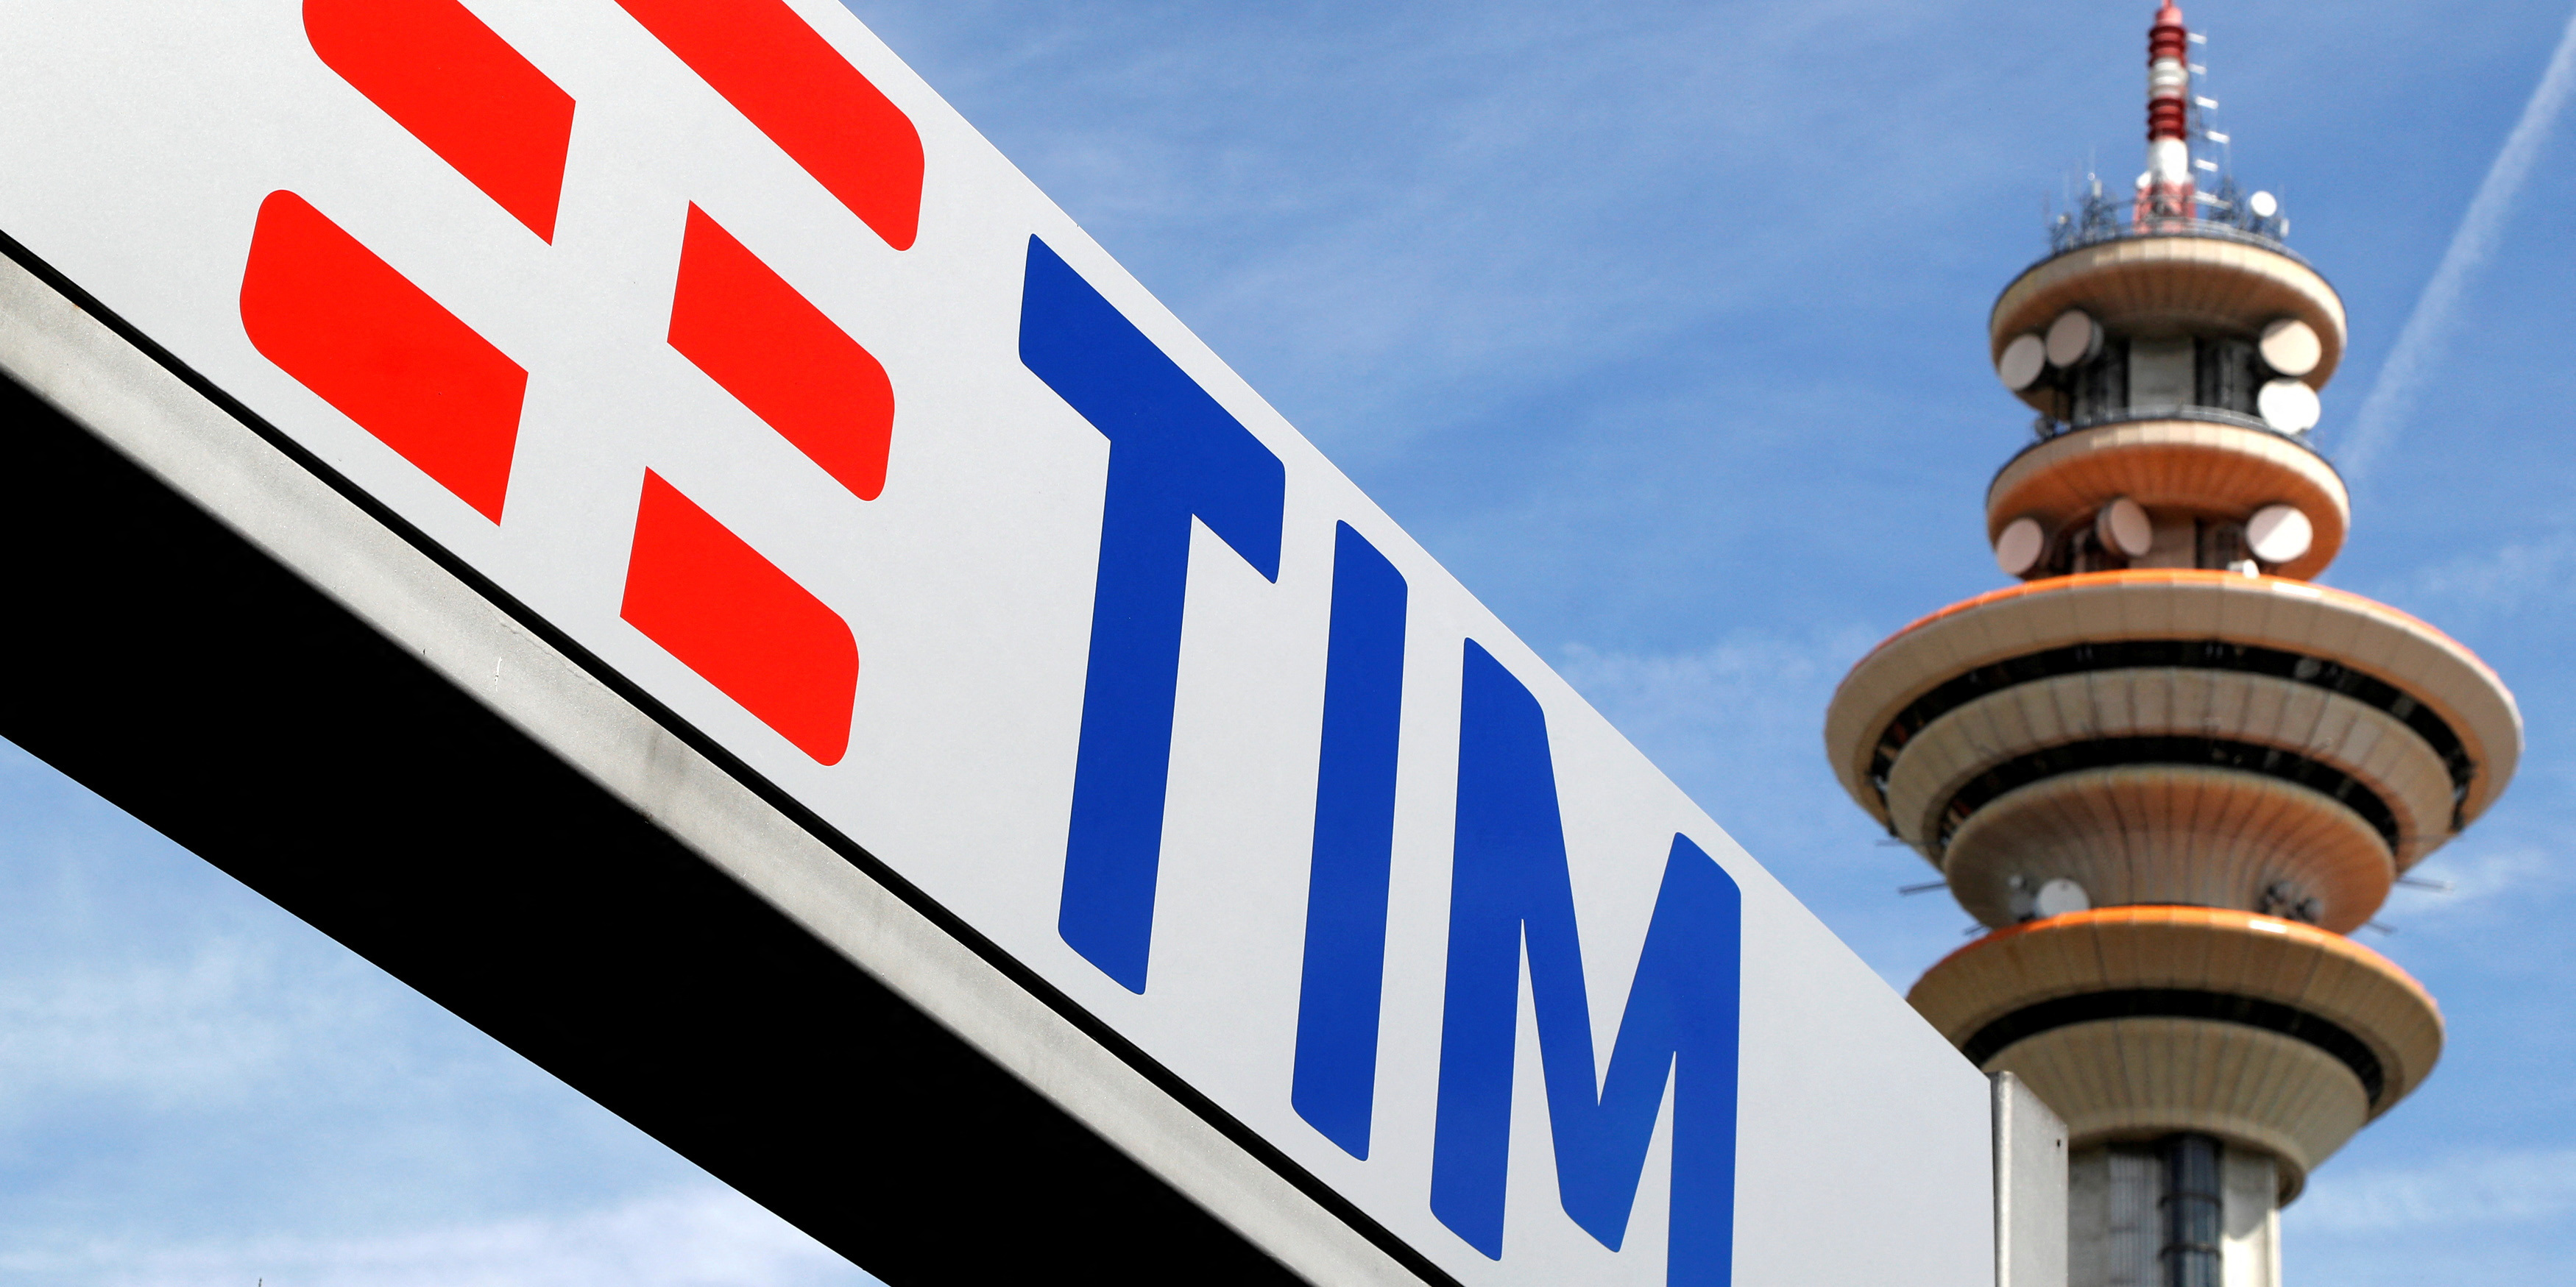 Telecom Italia : l'État, via la Caisse des dépôts, veut prendre le contrôle du réseau